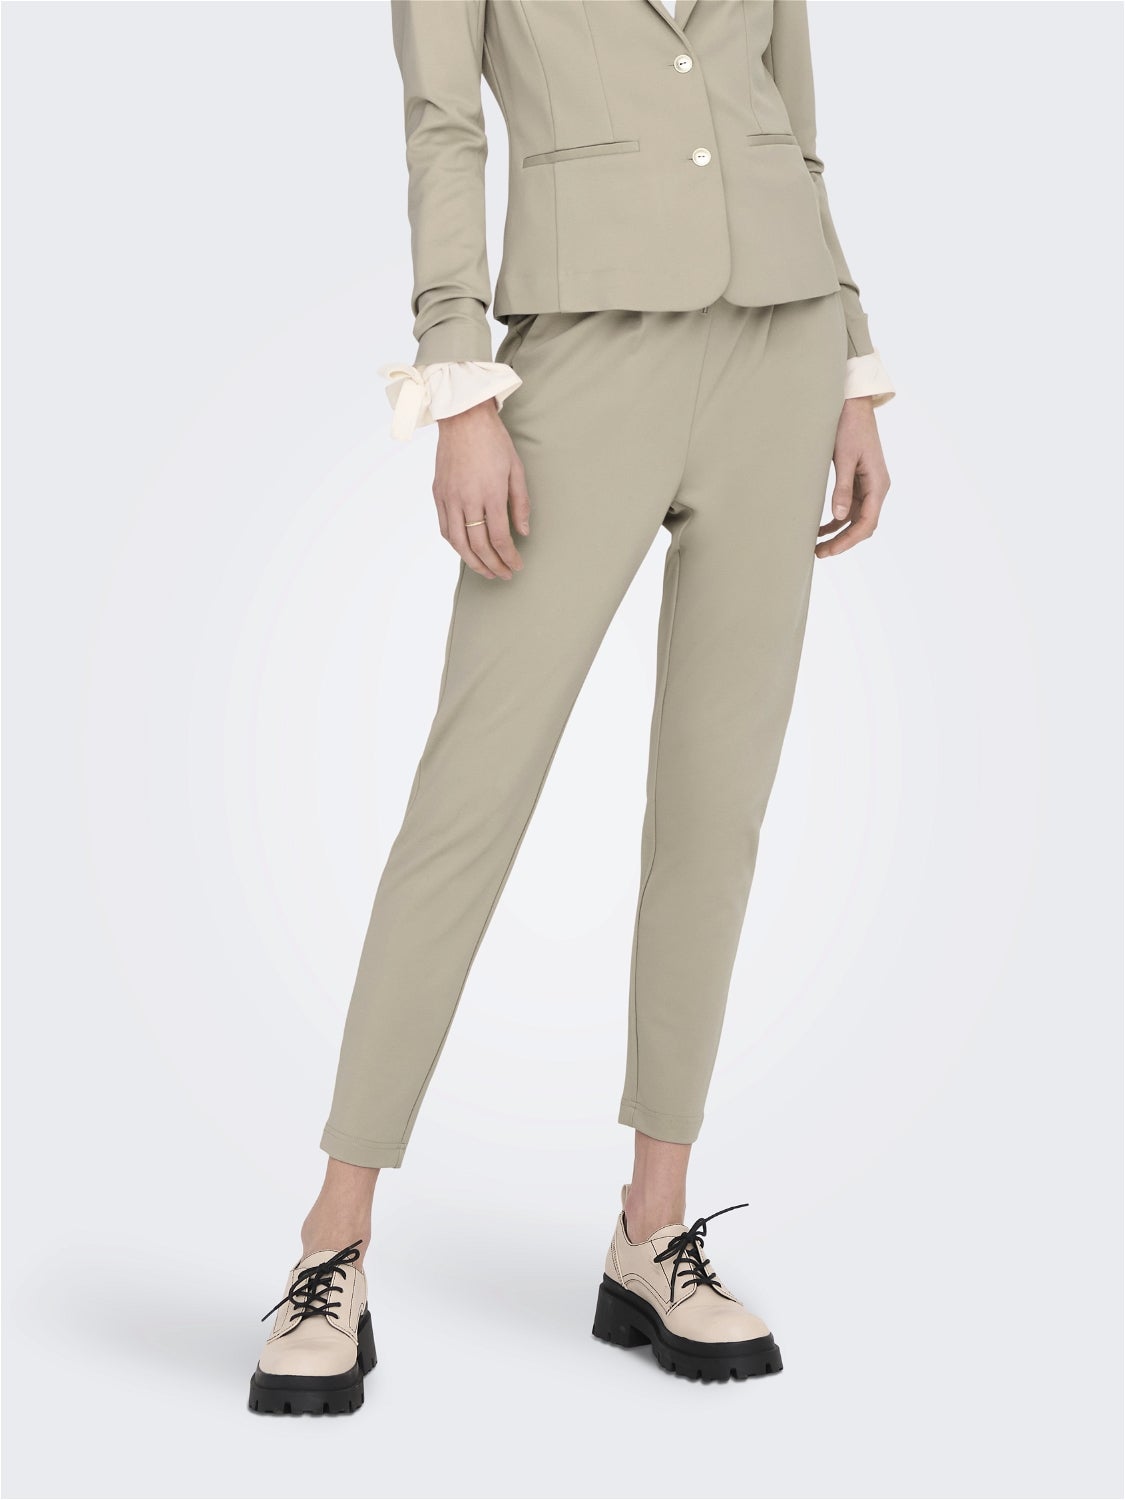 discount 90% WOMEN FASHION Trousers Print Camaïeu Chino trouser Navy Blue S 